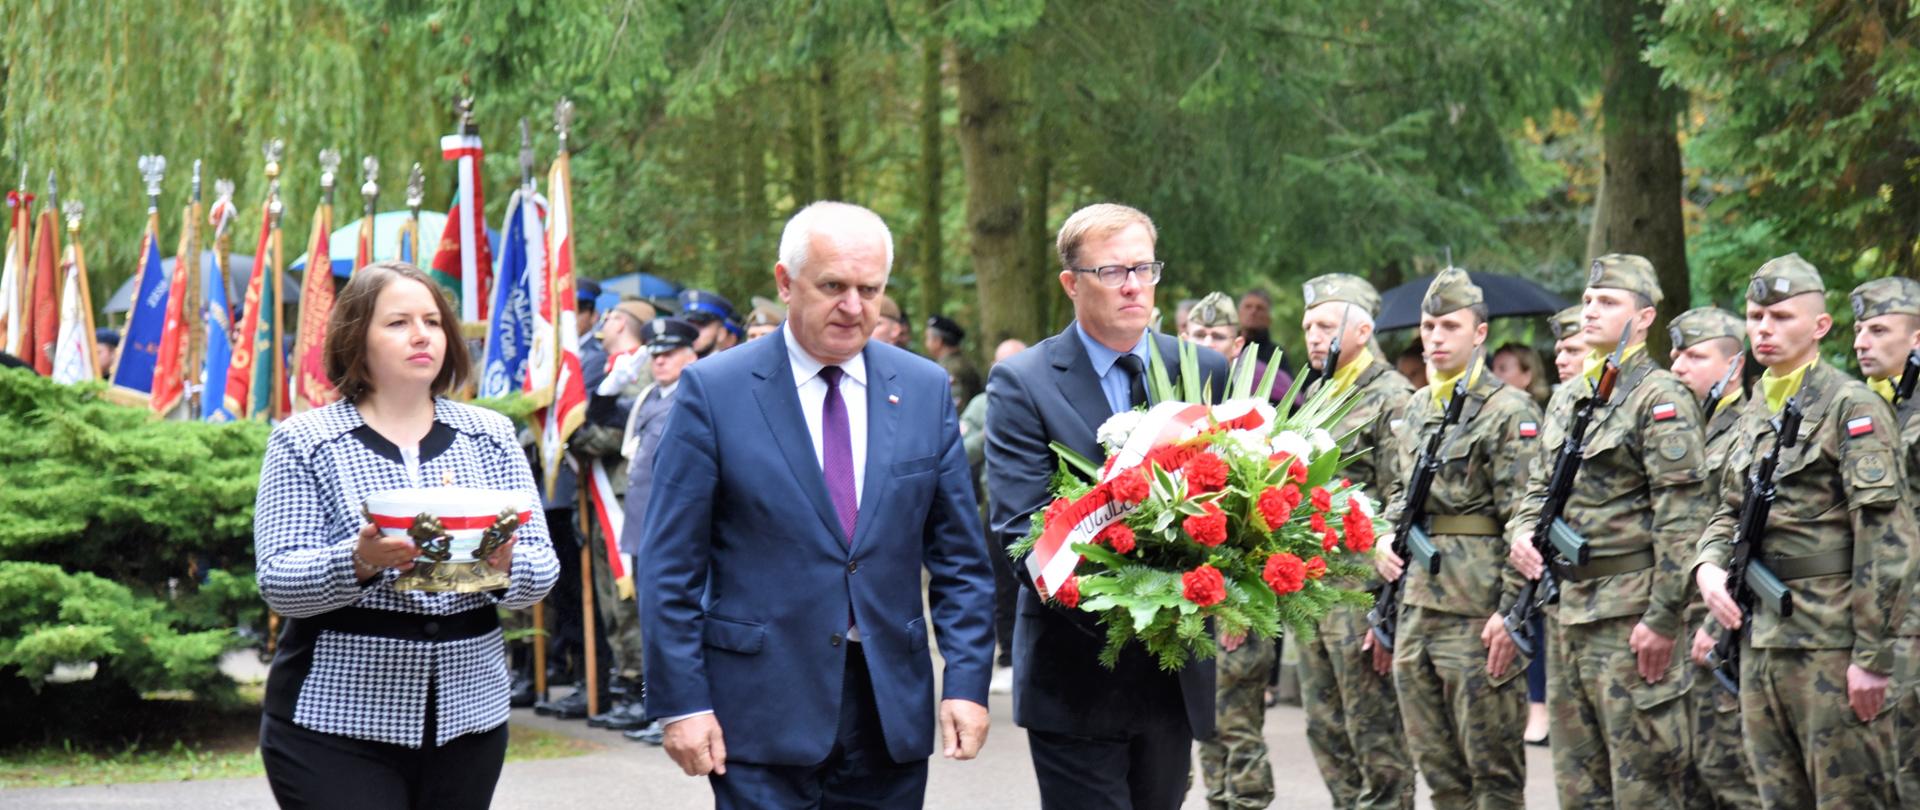 Obchody Dnia Sybiraka połączone z Dniem Pamięci Ofiar Zbrodni Katyńskiej, wojewoda lubuski składa kwiaty